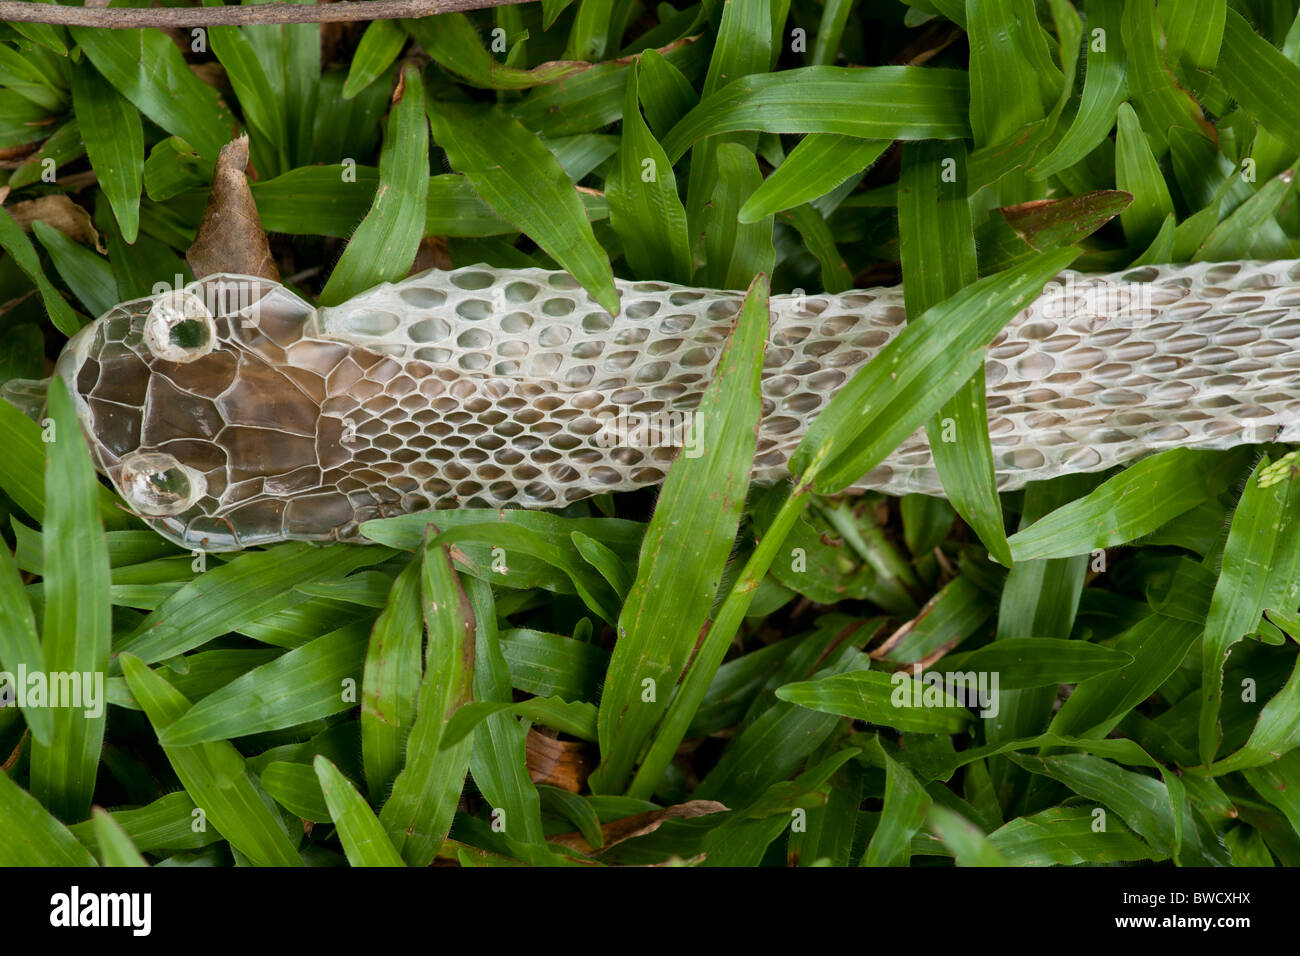 Sloughed snake skin at Peradeniya Botanic Gardens, Sri Lanka Stock Photo